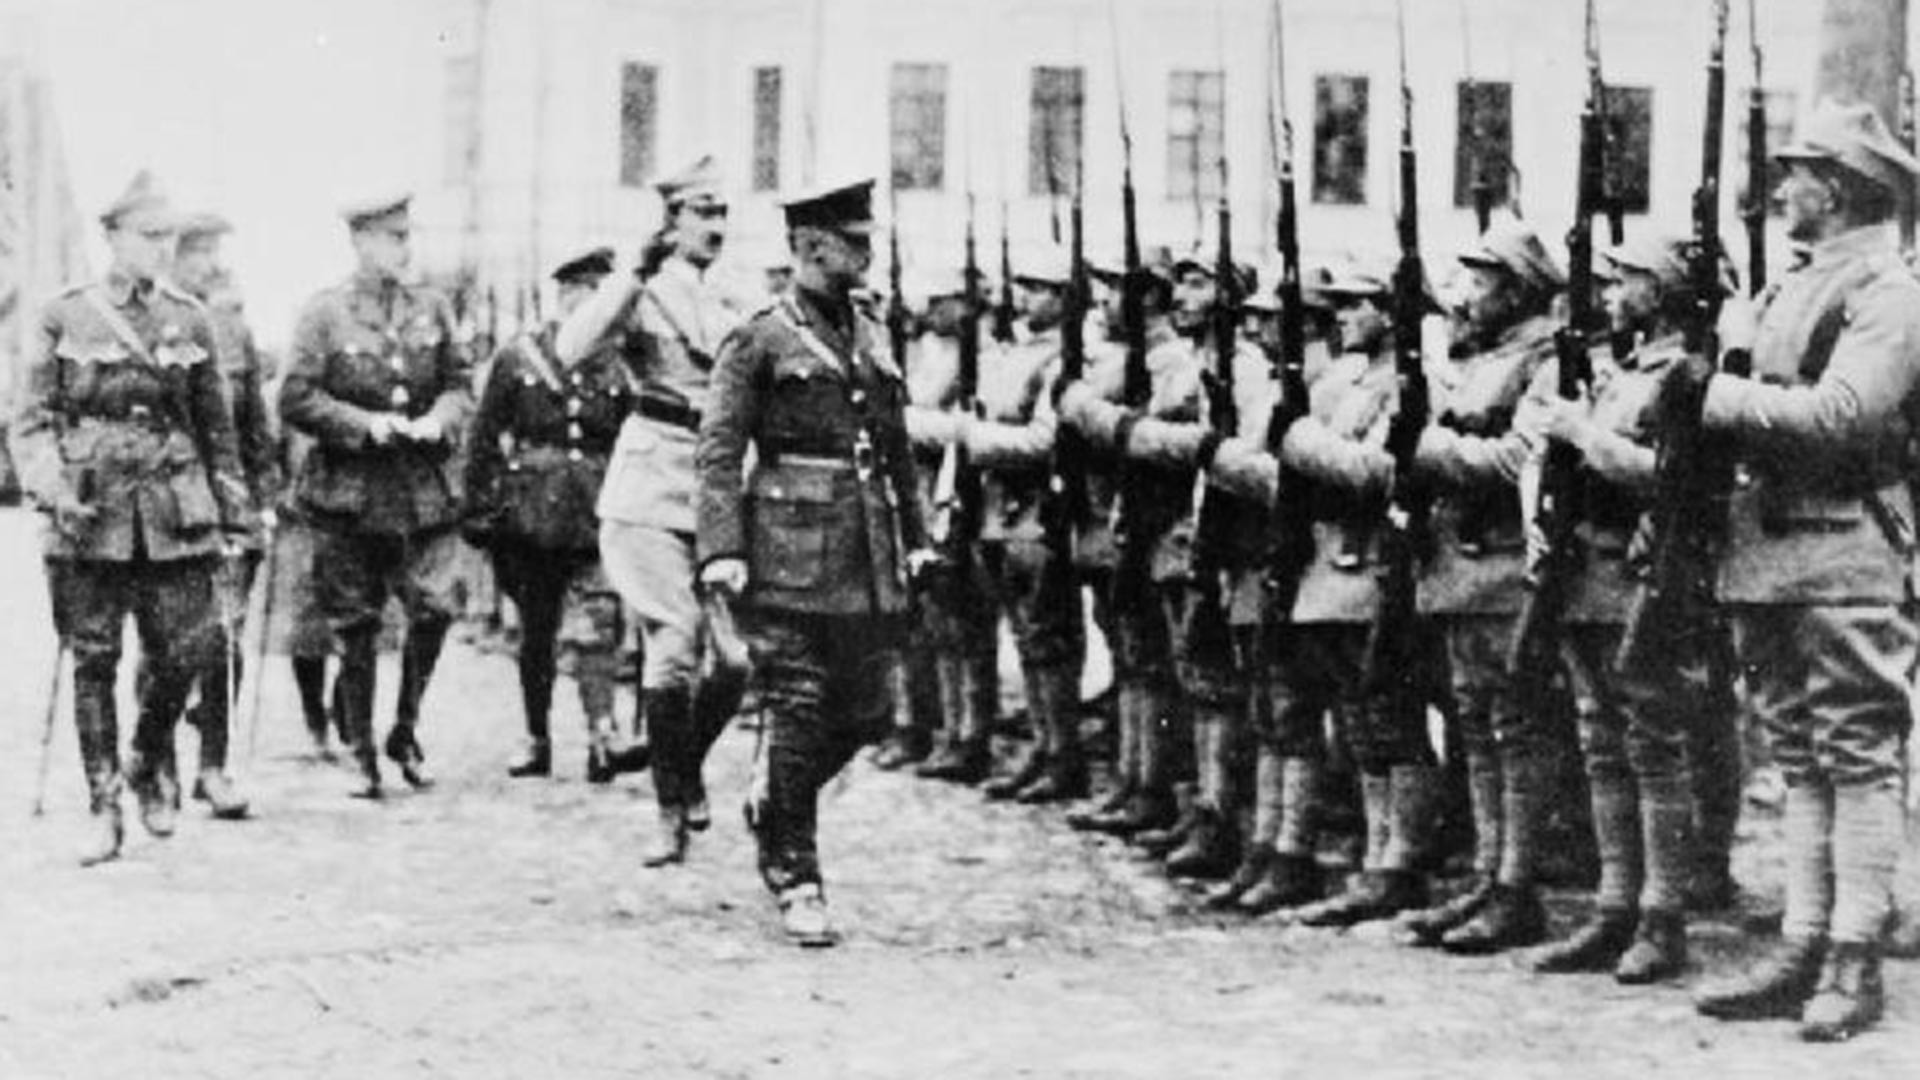 Perwira Polandia, Inggris, dan Prancis memeriksa detasemen pasukan Polandia yang disebut Batalion Murmansk sebelum keberangkatan mereka ke garis depan, Arkhangelsk, 1919.